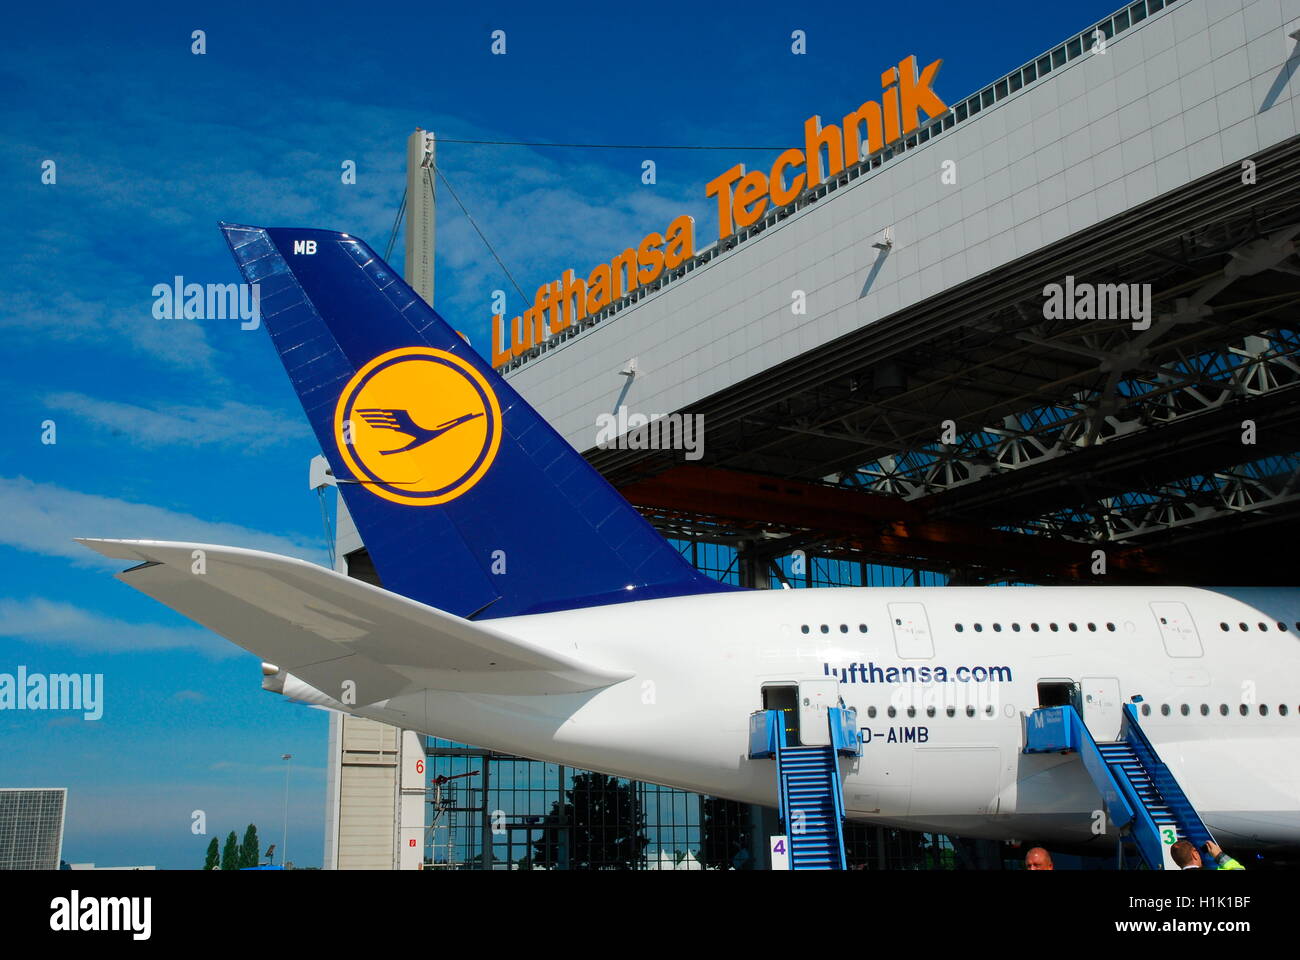 Zivilluftfahrt, Passagierflugzeug, Wartungshalle, Lufthansa, Airport, Muenchen Stock Photo